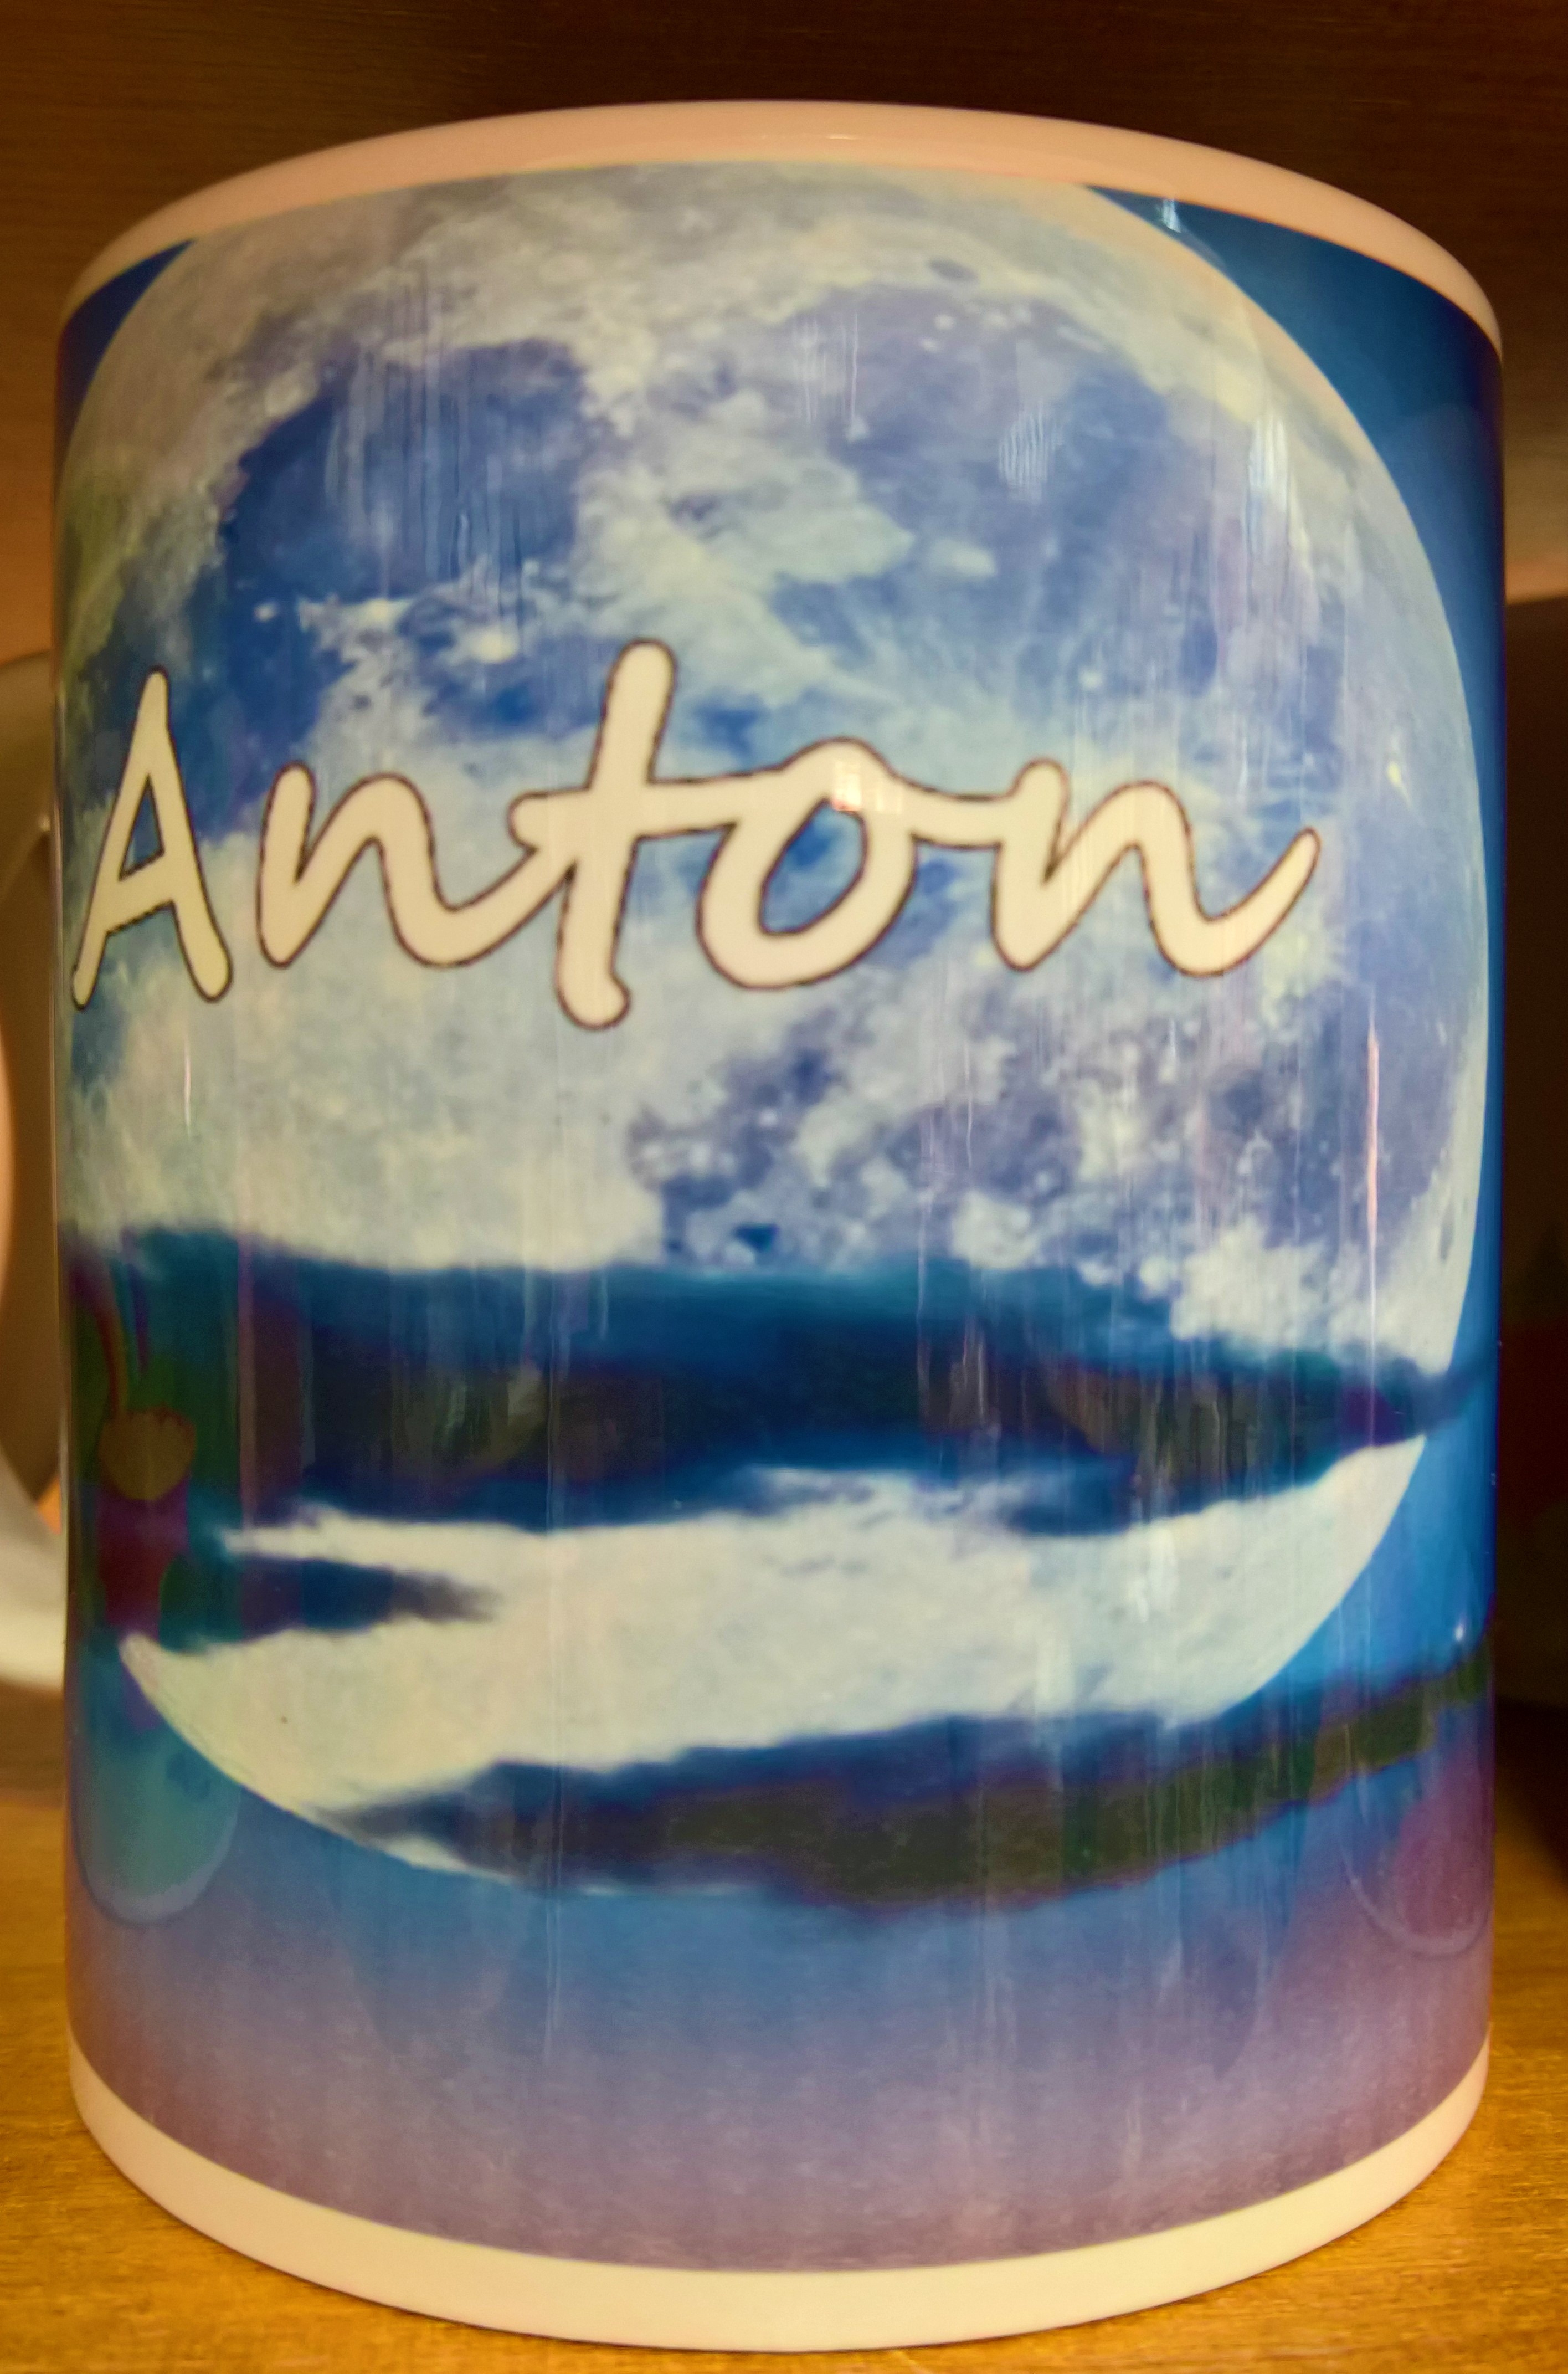 Hrnček "Anton"